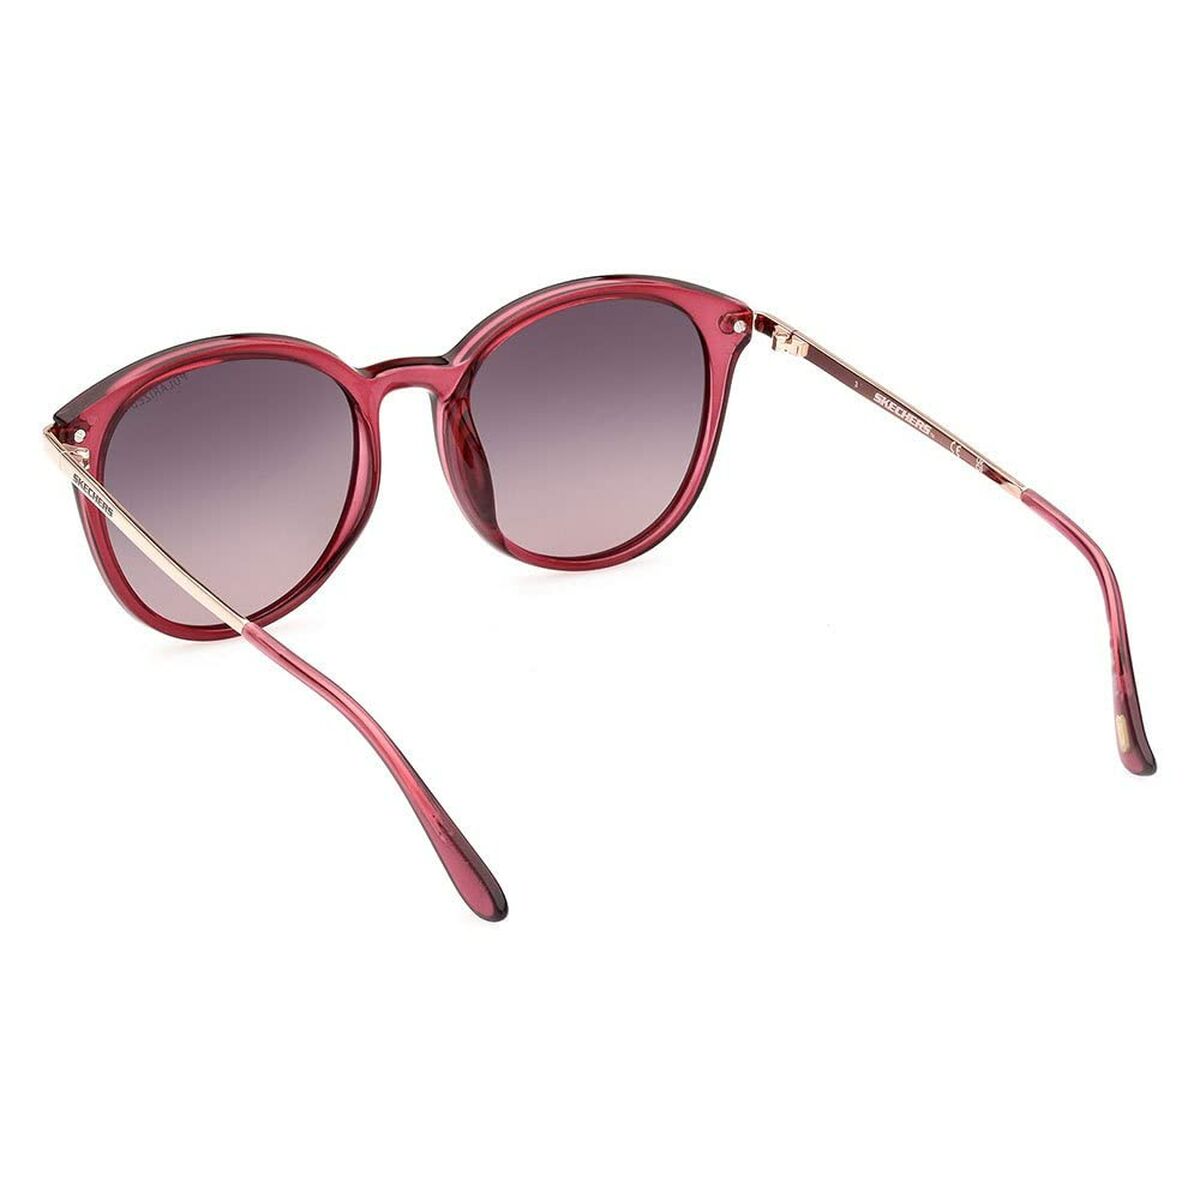 Kaufe Damensonnenbrille Skechers SE6210 5375D bei AWK Flagship um € 56.00